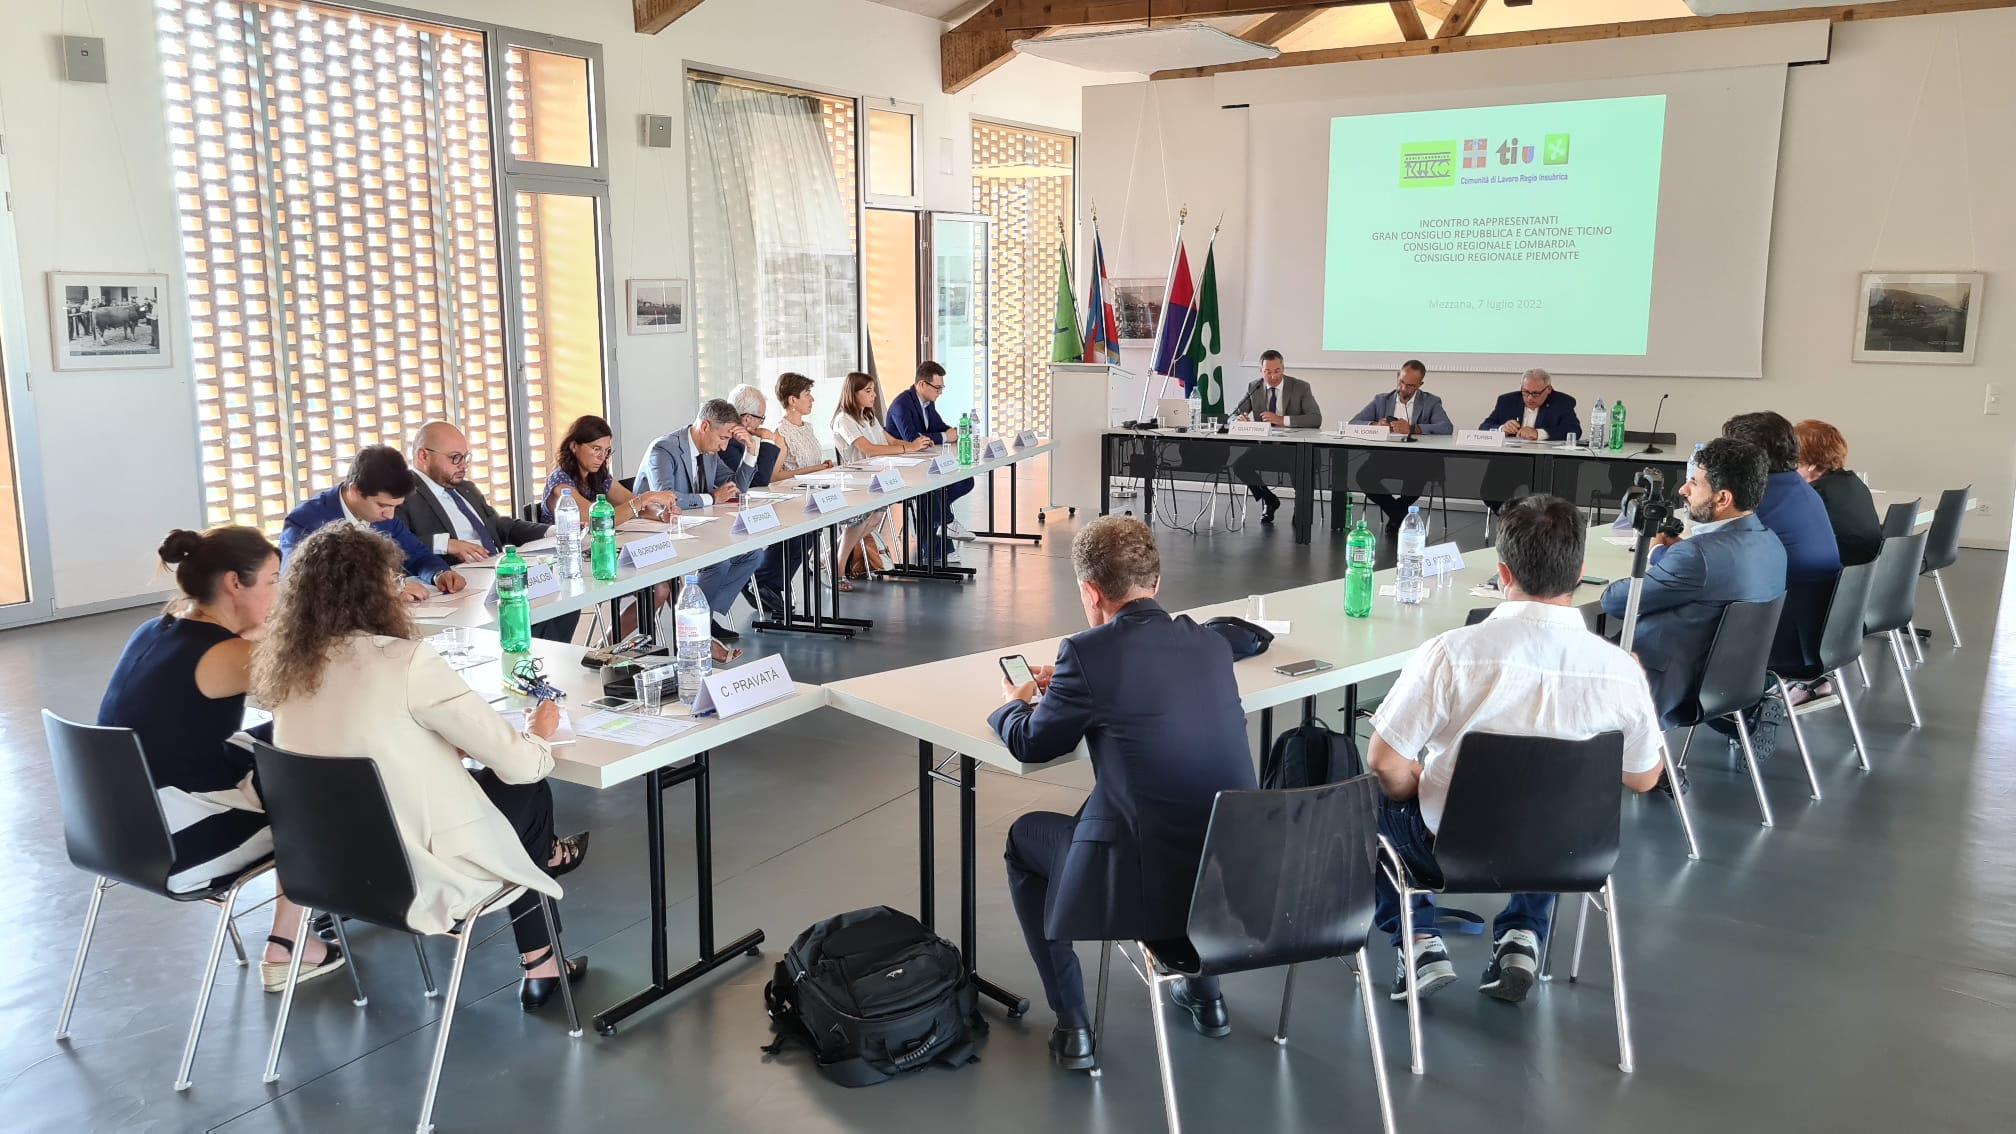 Collaborazione Lombardia, Piemonte e Canton Ticino: siccità, aree di frontiera e protezione civile